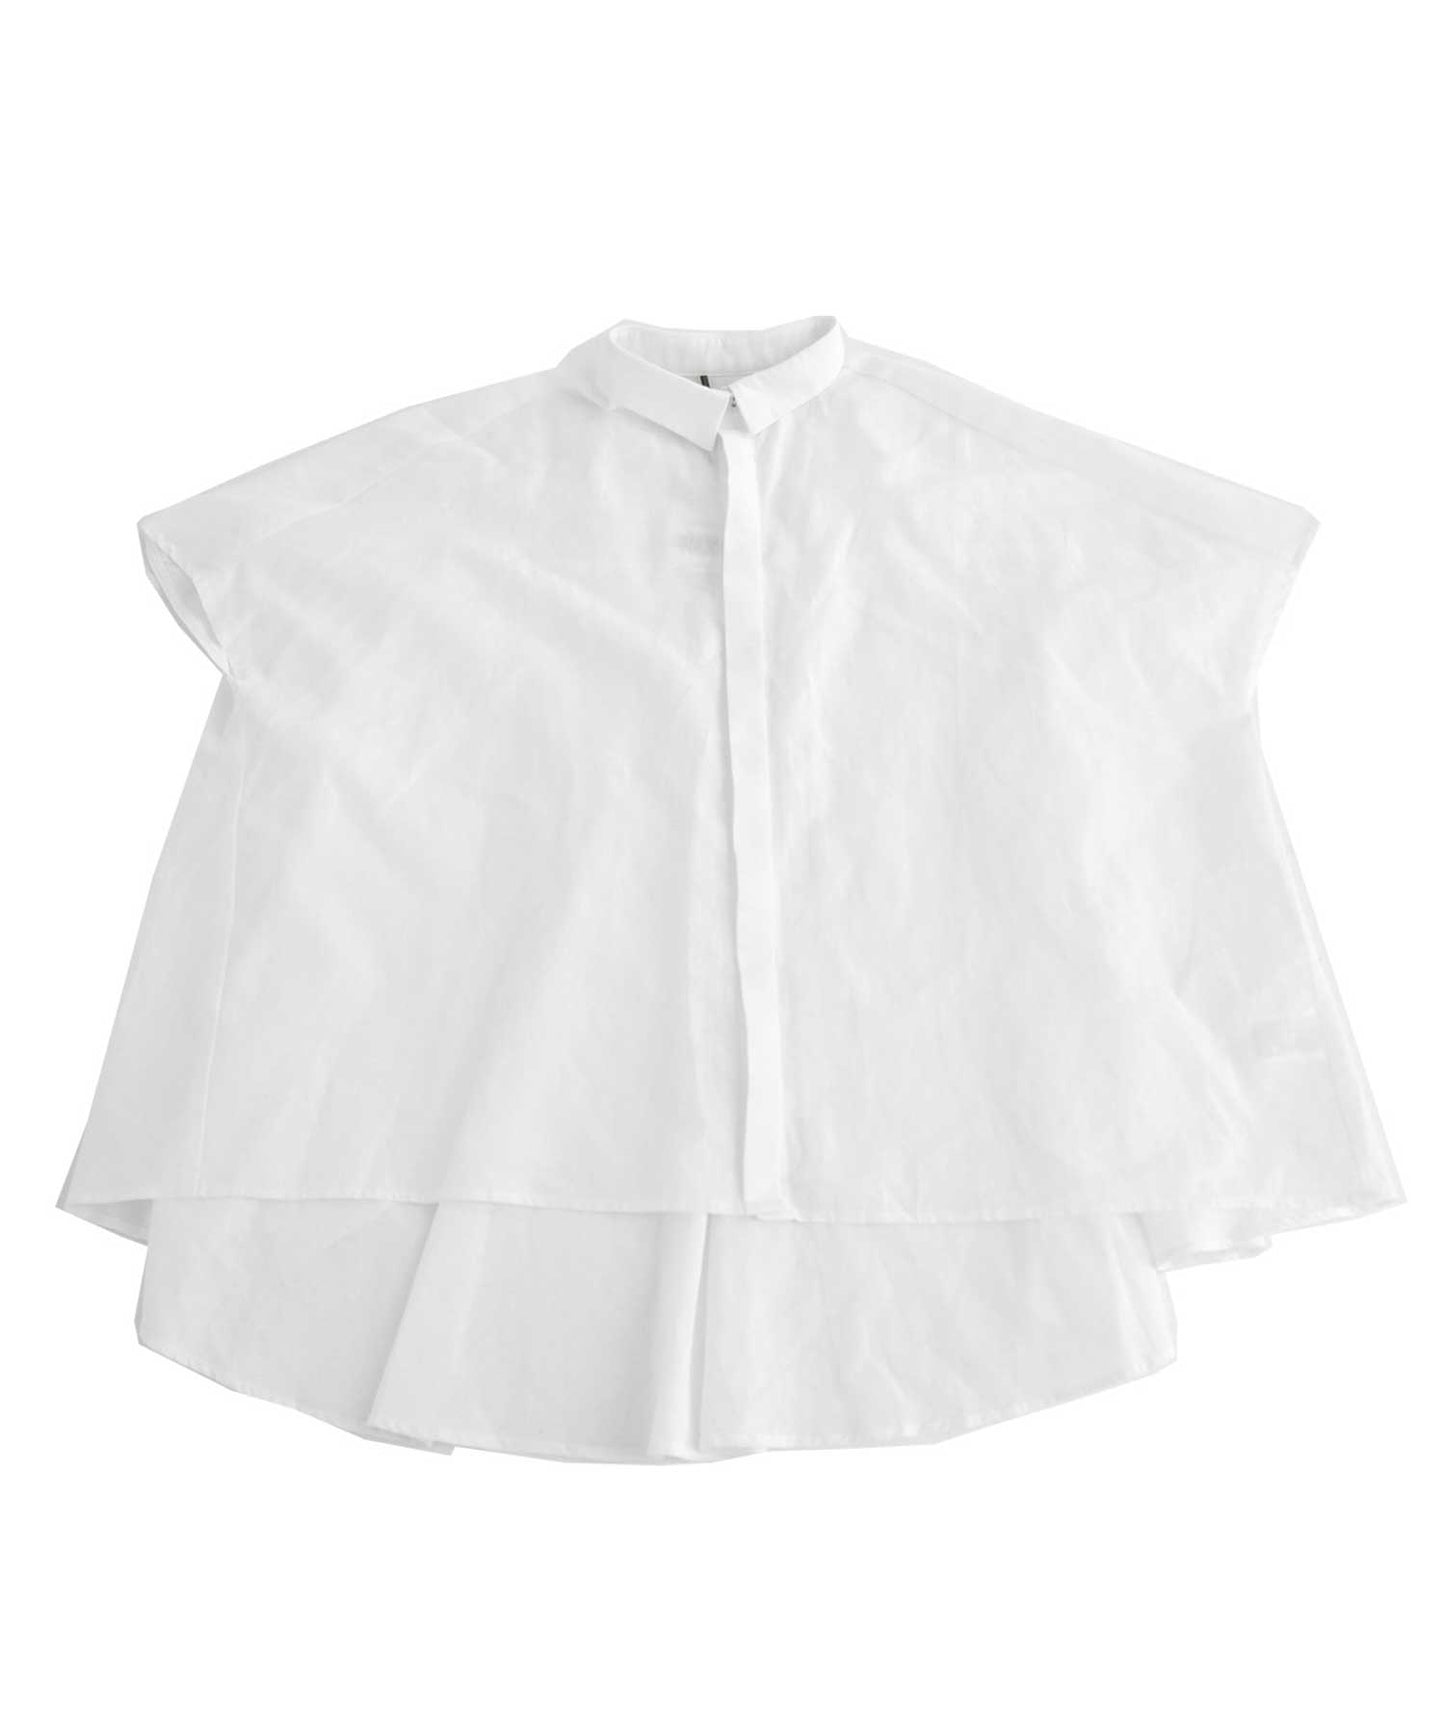 Cotton drape shirt woMen's tops